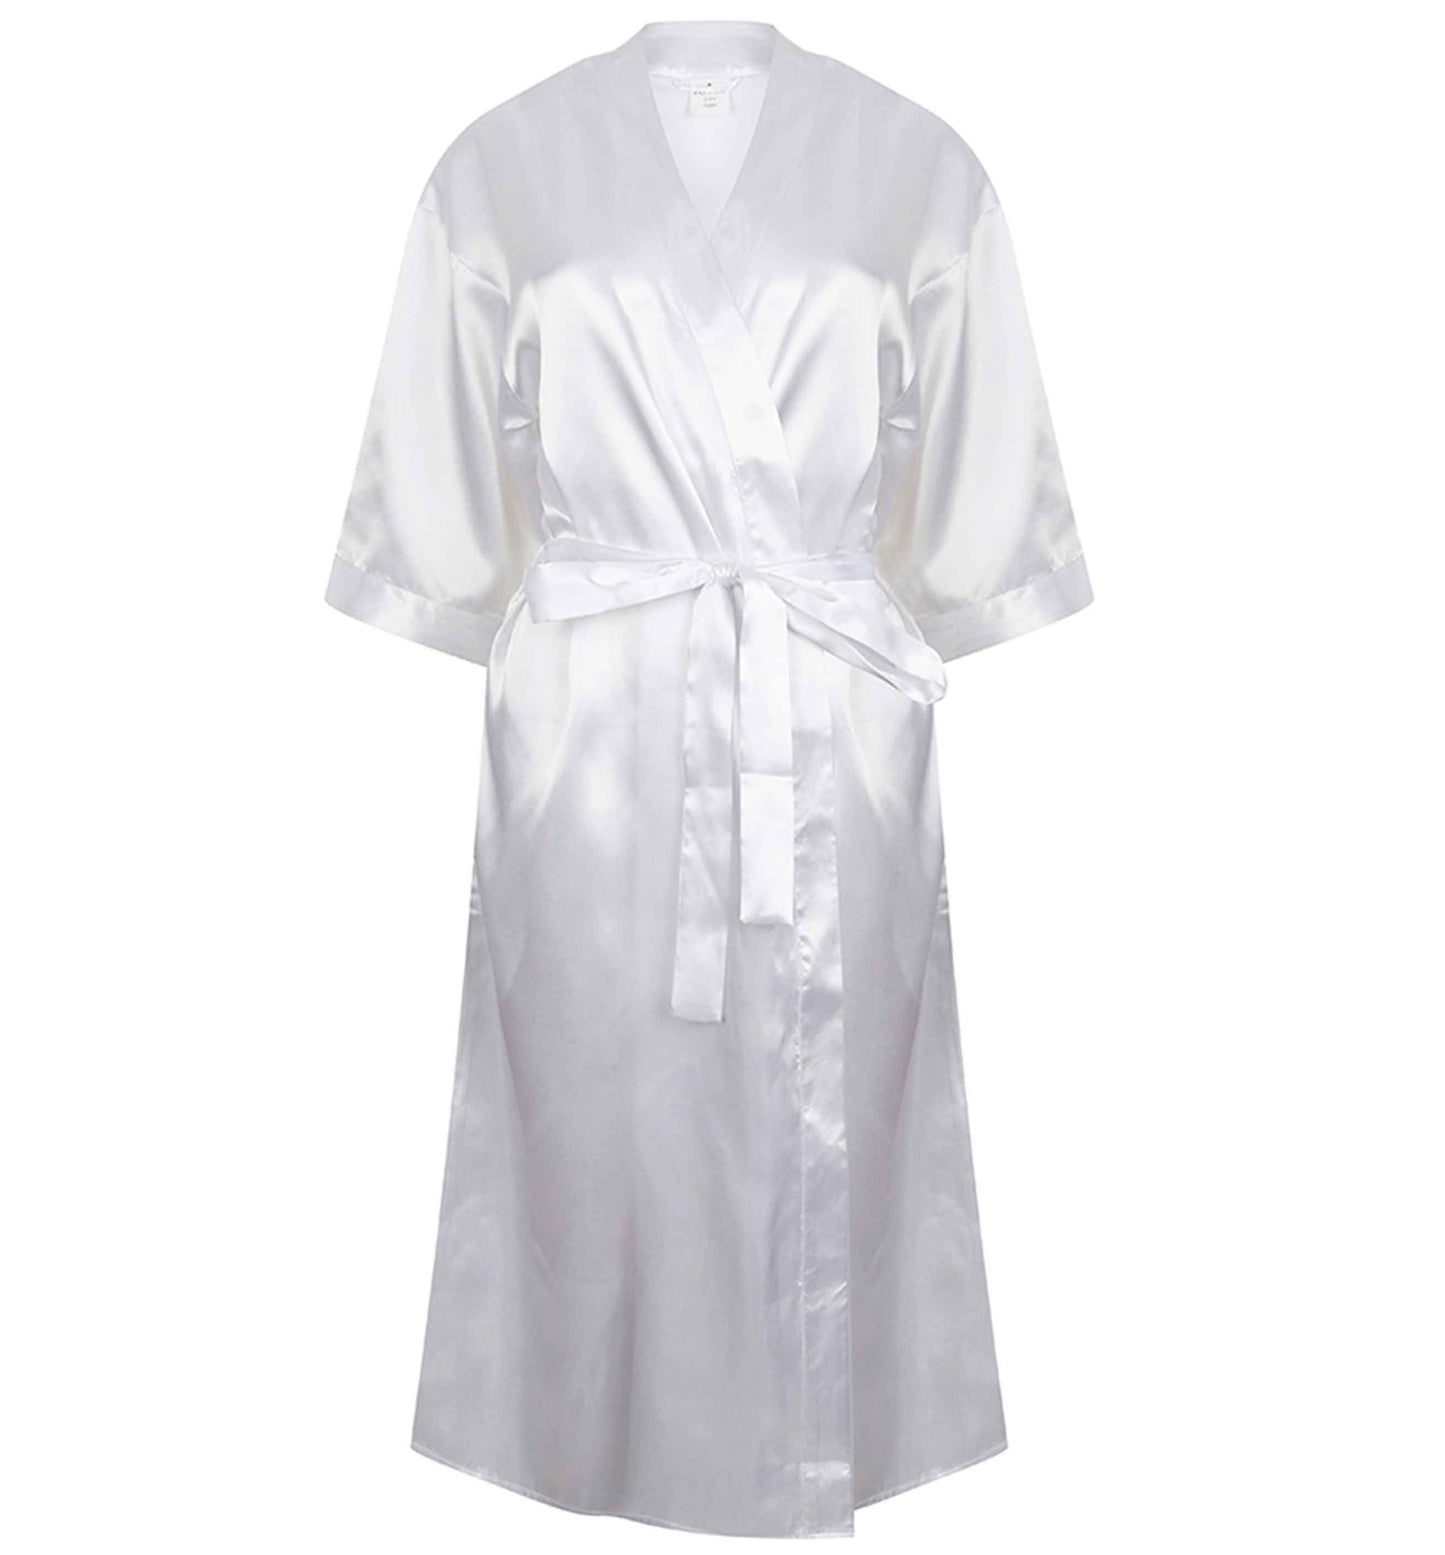 Part of the I do club | 8-18 | Kimono style satin robe | Ladies dressing gown